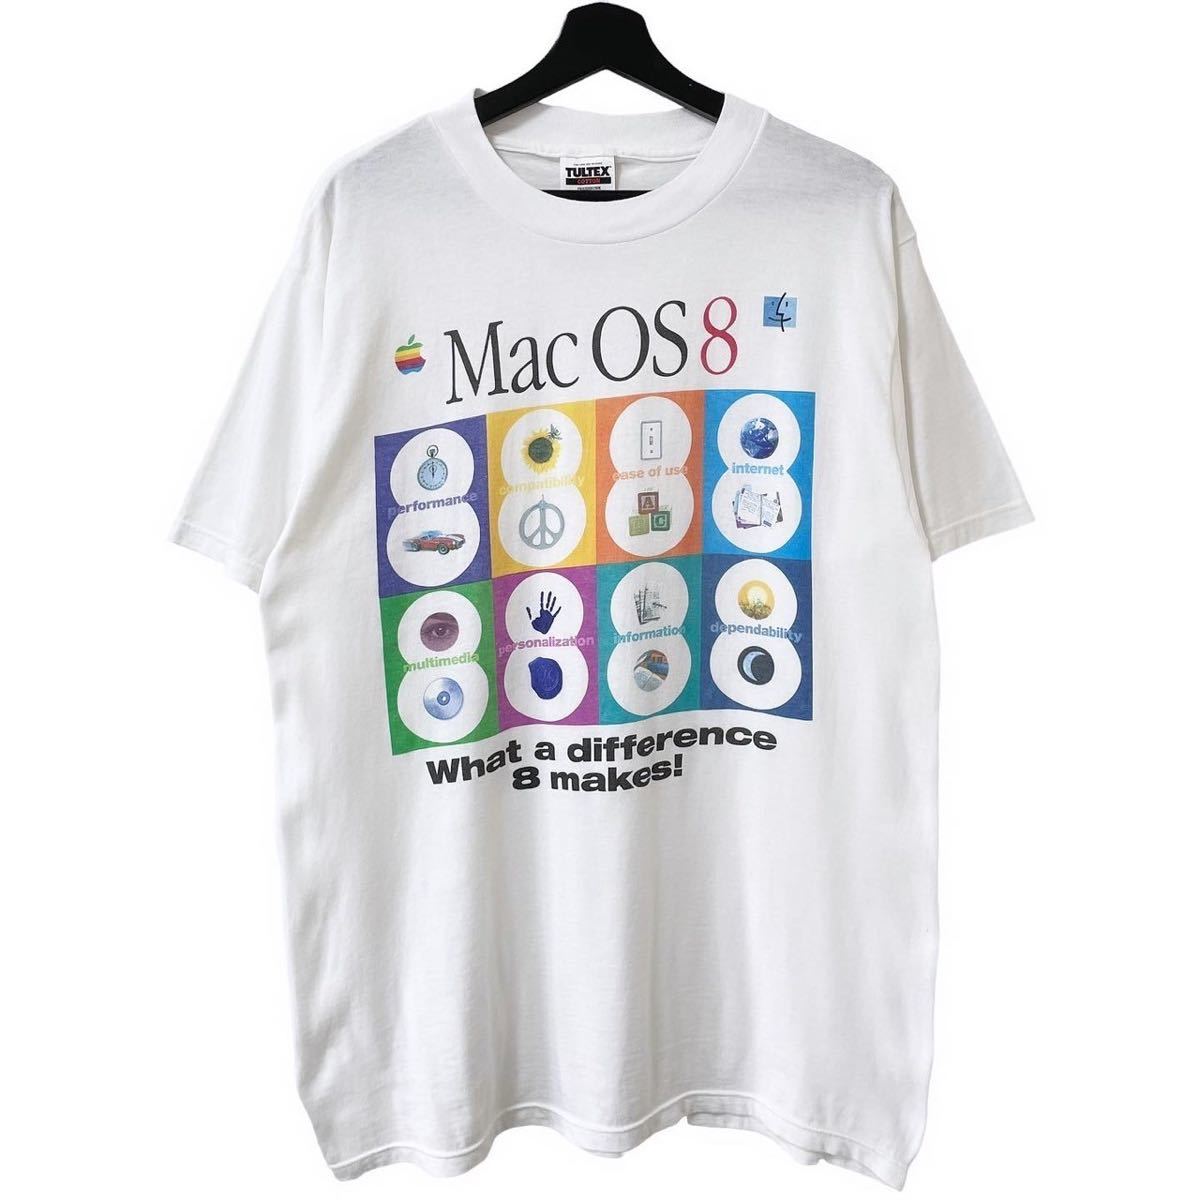 【2022新春福袋】 L Tシャツ 企業 8 OS Mac Apple USA製 ■激レア■90s XL ビンテージ マック アップル イラスト、キャラクター